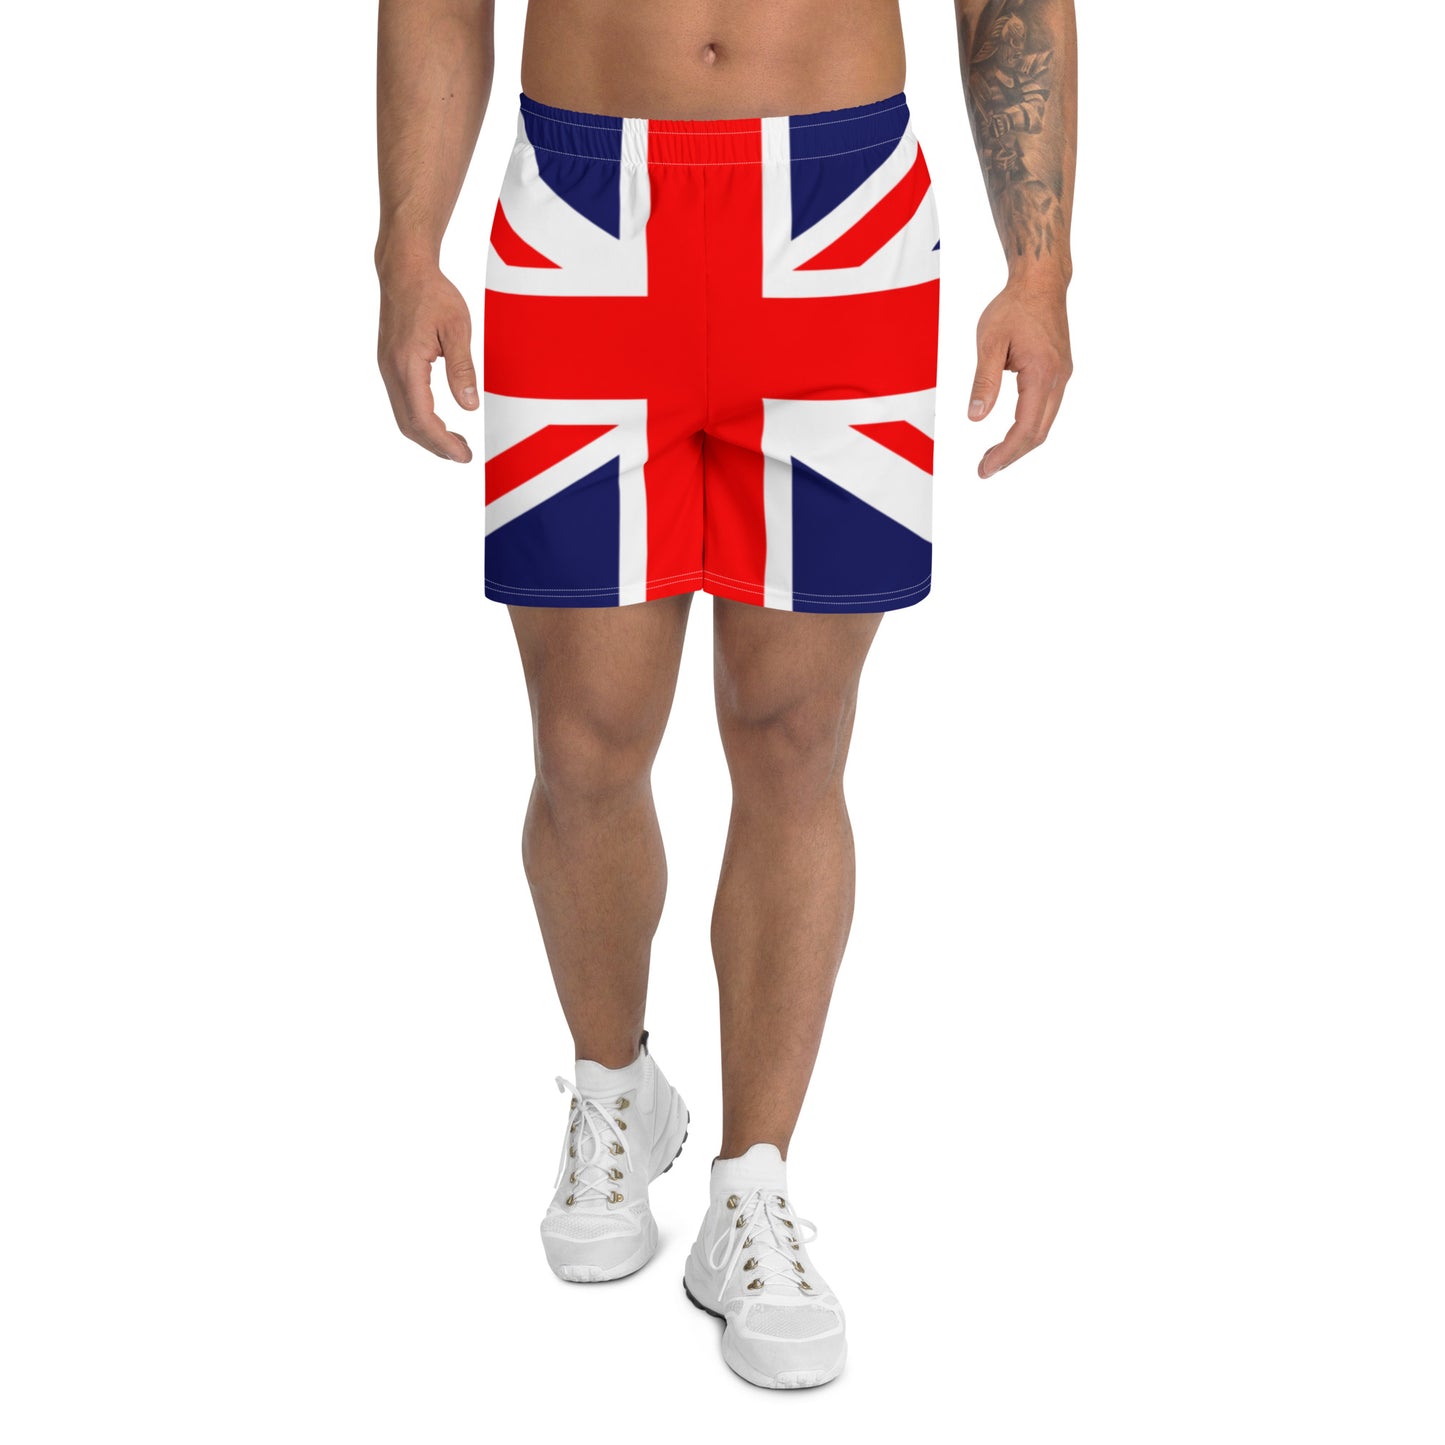 Union Jack Shorts Heren / Union Jack Kleding / Britse Kleding / Patriot Kleding / Eco Friendly